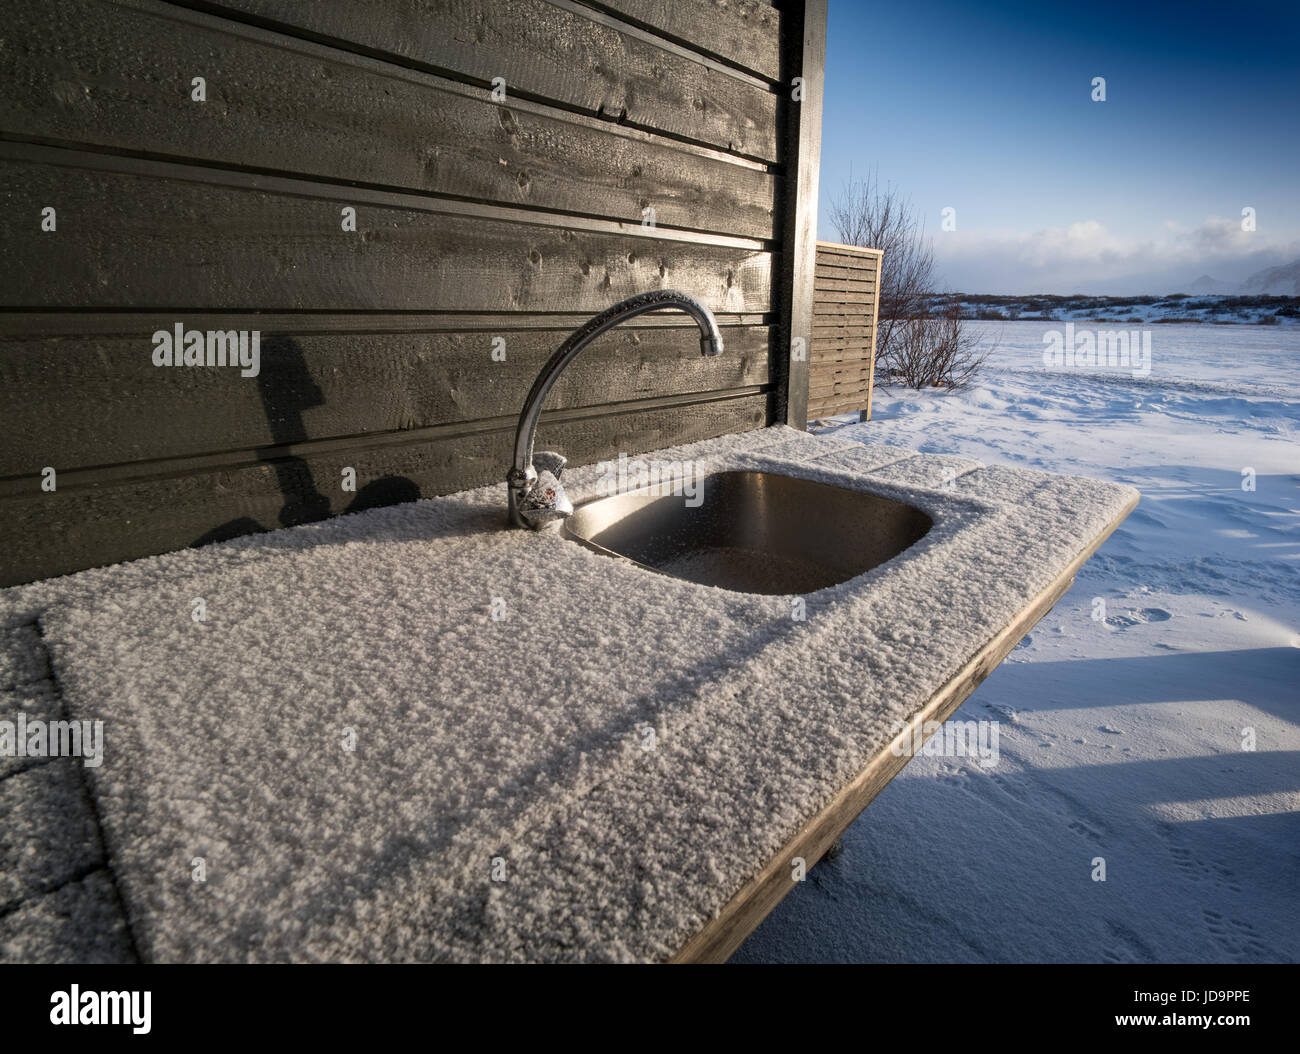 Sumidero cubierto de nieve por la pared exterior de la cabaña, Islandia, Europa. Islandia naturaleza frío invierno 2017 Foto de stock